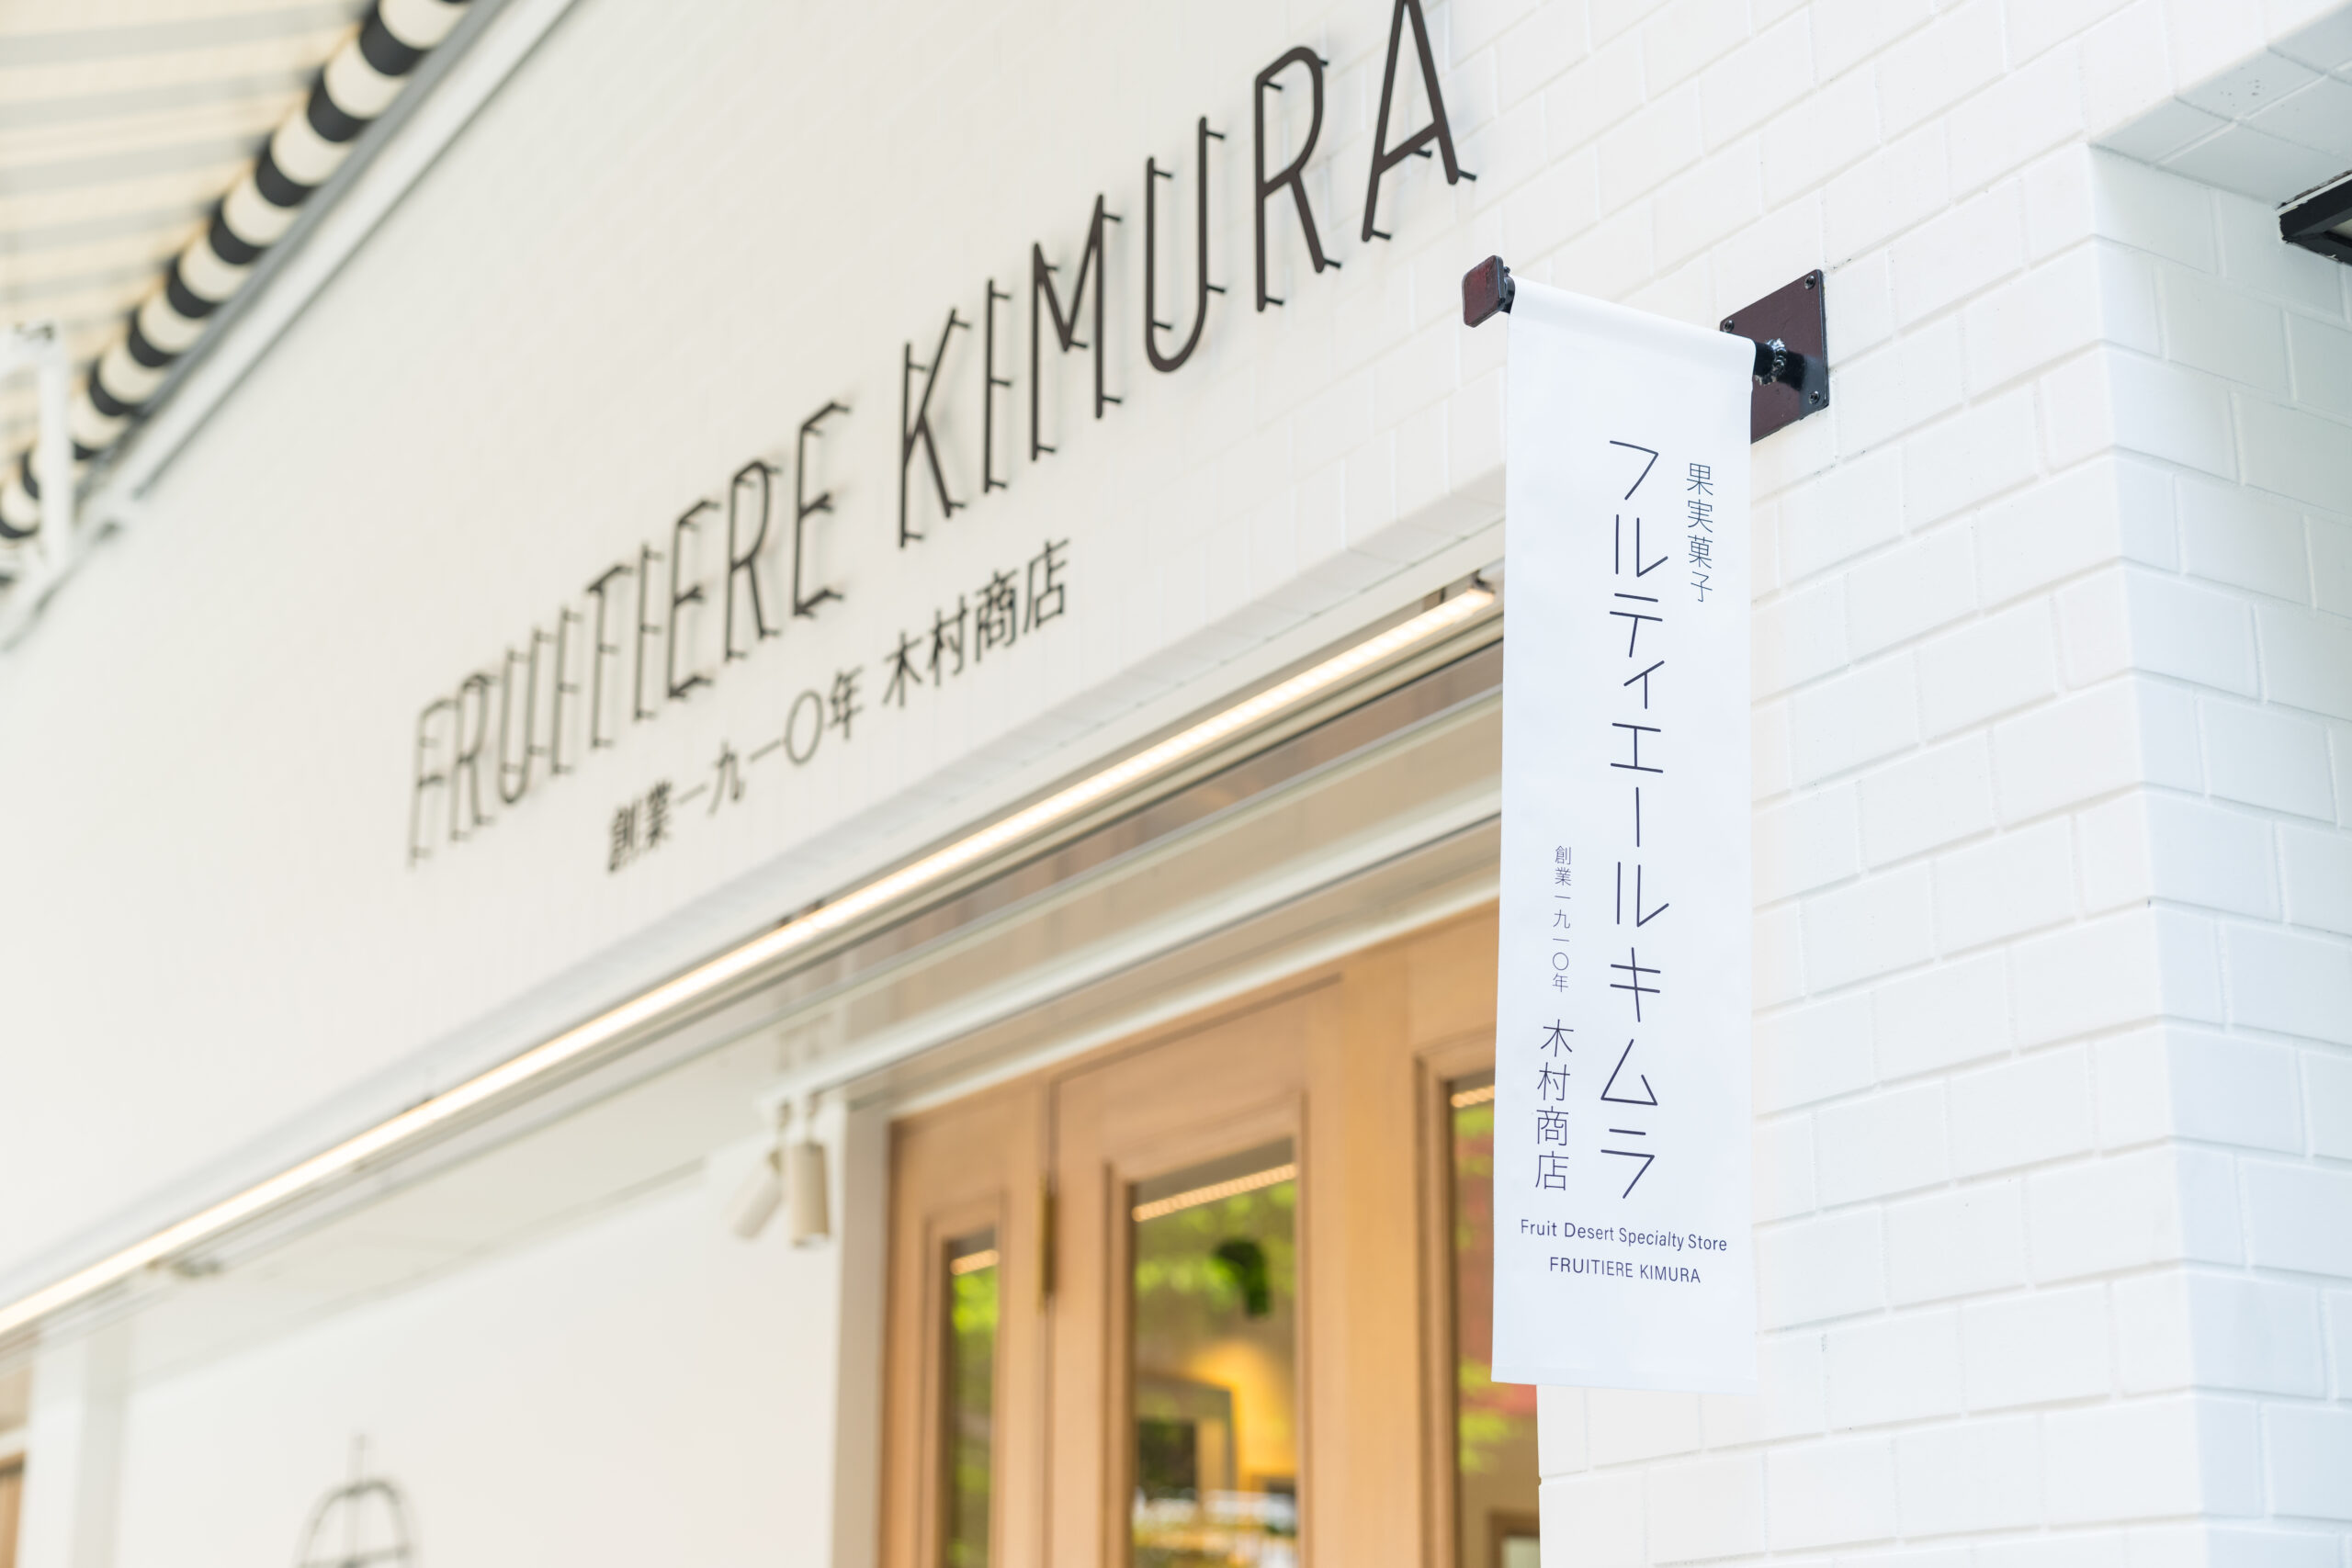 キムラフルーツの果実菓子の新ブランド店「FRUITIERE　KIMURA」（フルティエールキムラ）